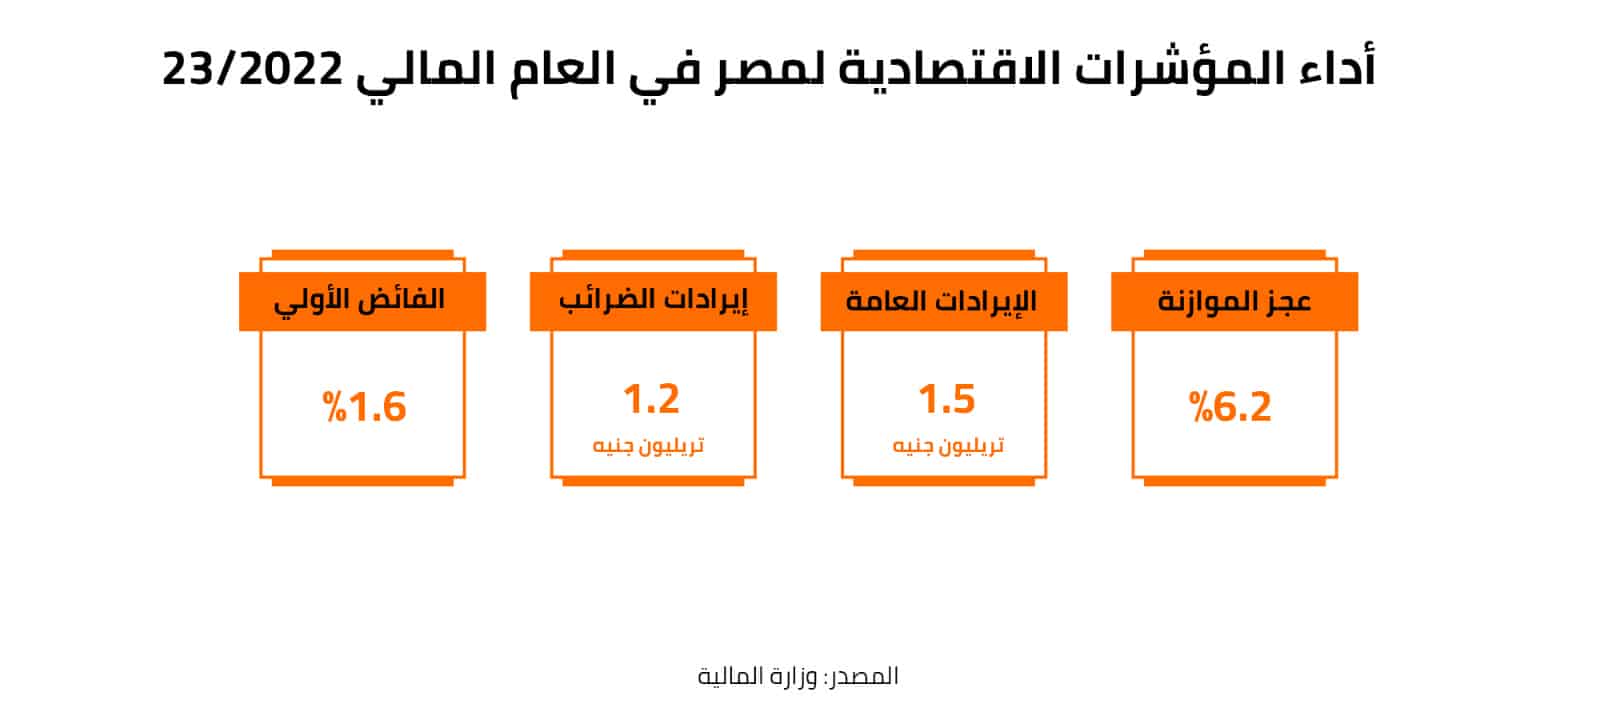 أداء المؤشرات الاقتصادية في مصر خلال العام المالي 2022-23  